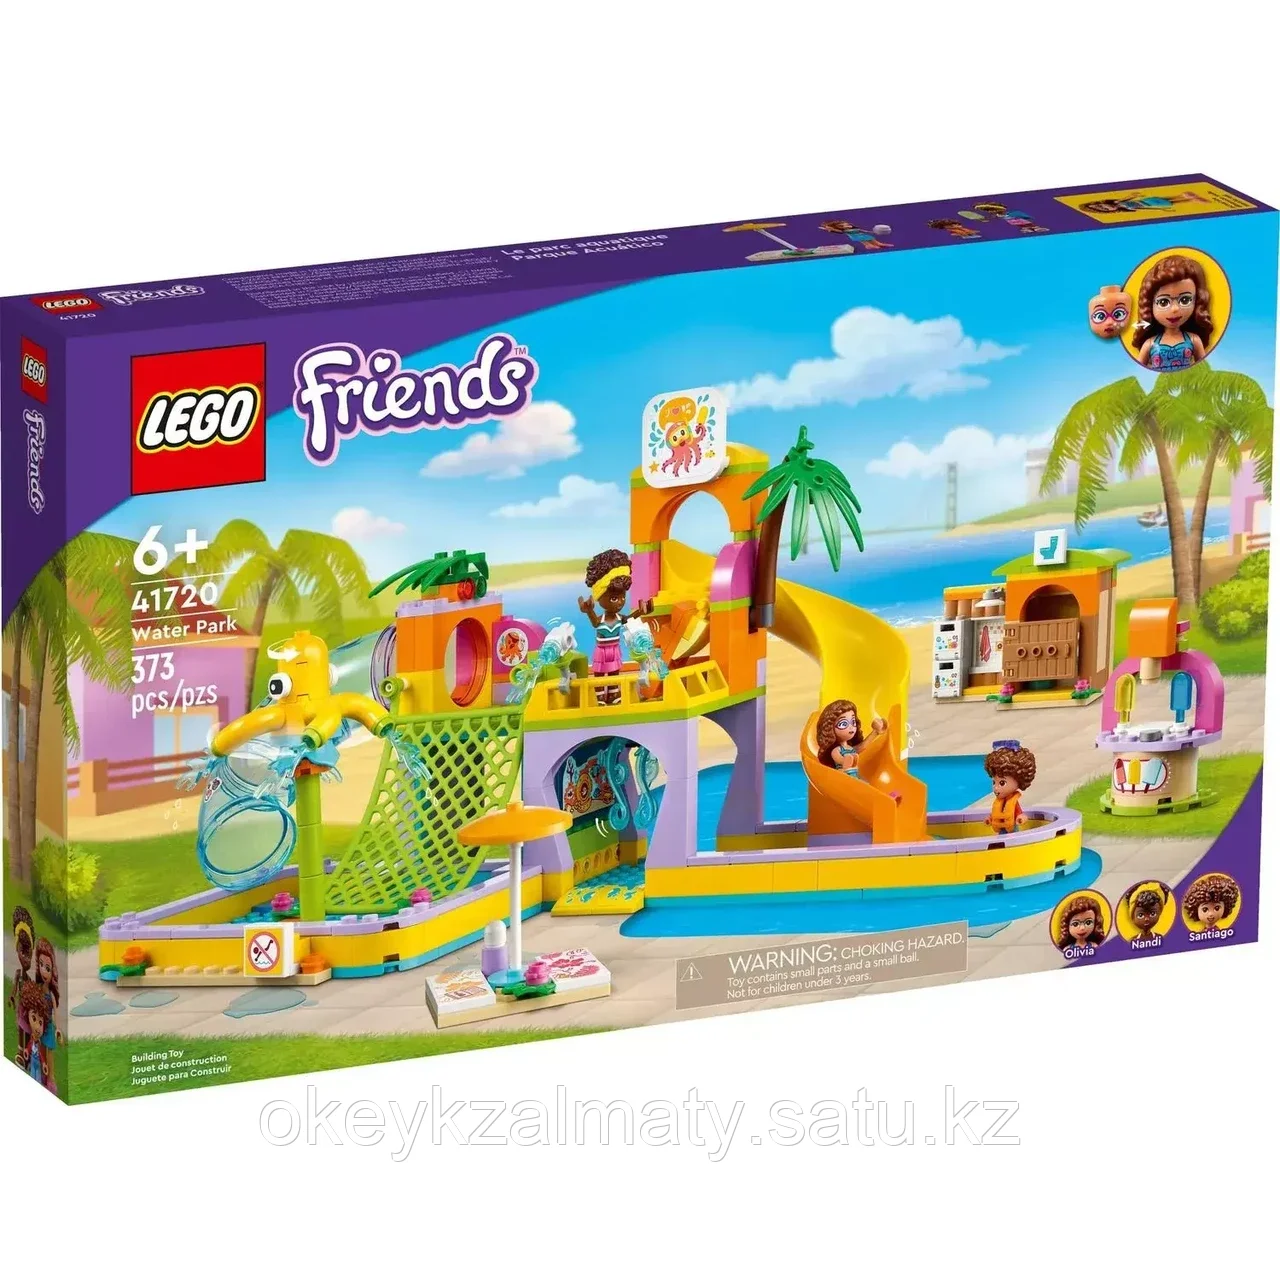 LEGO Friends: Аквапарк 41720